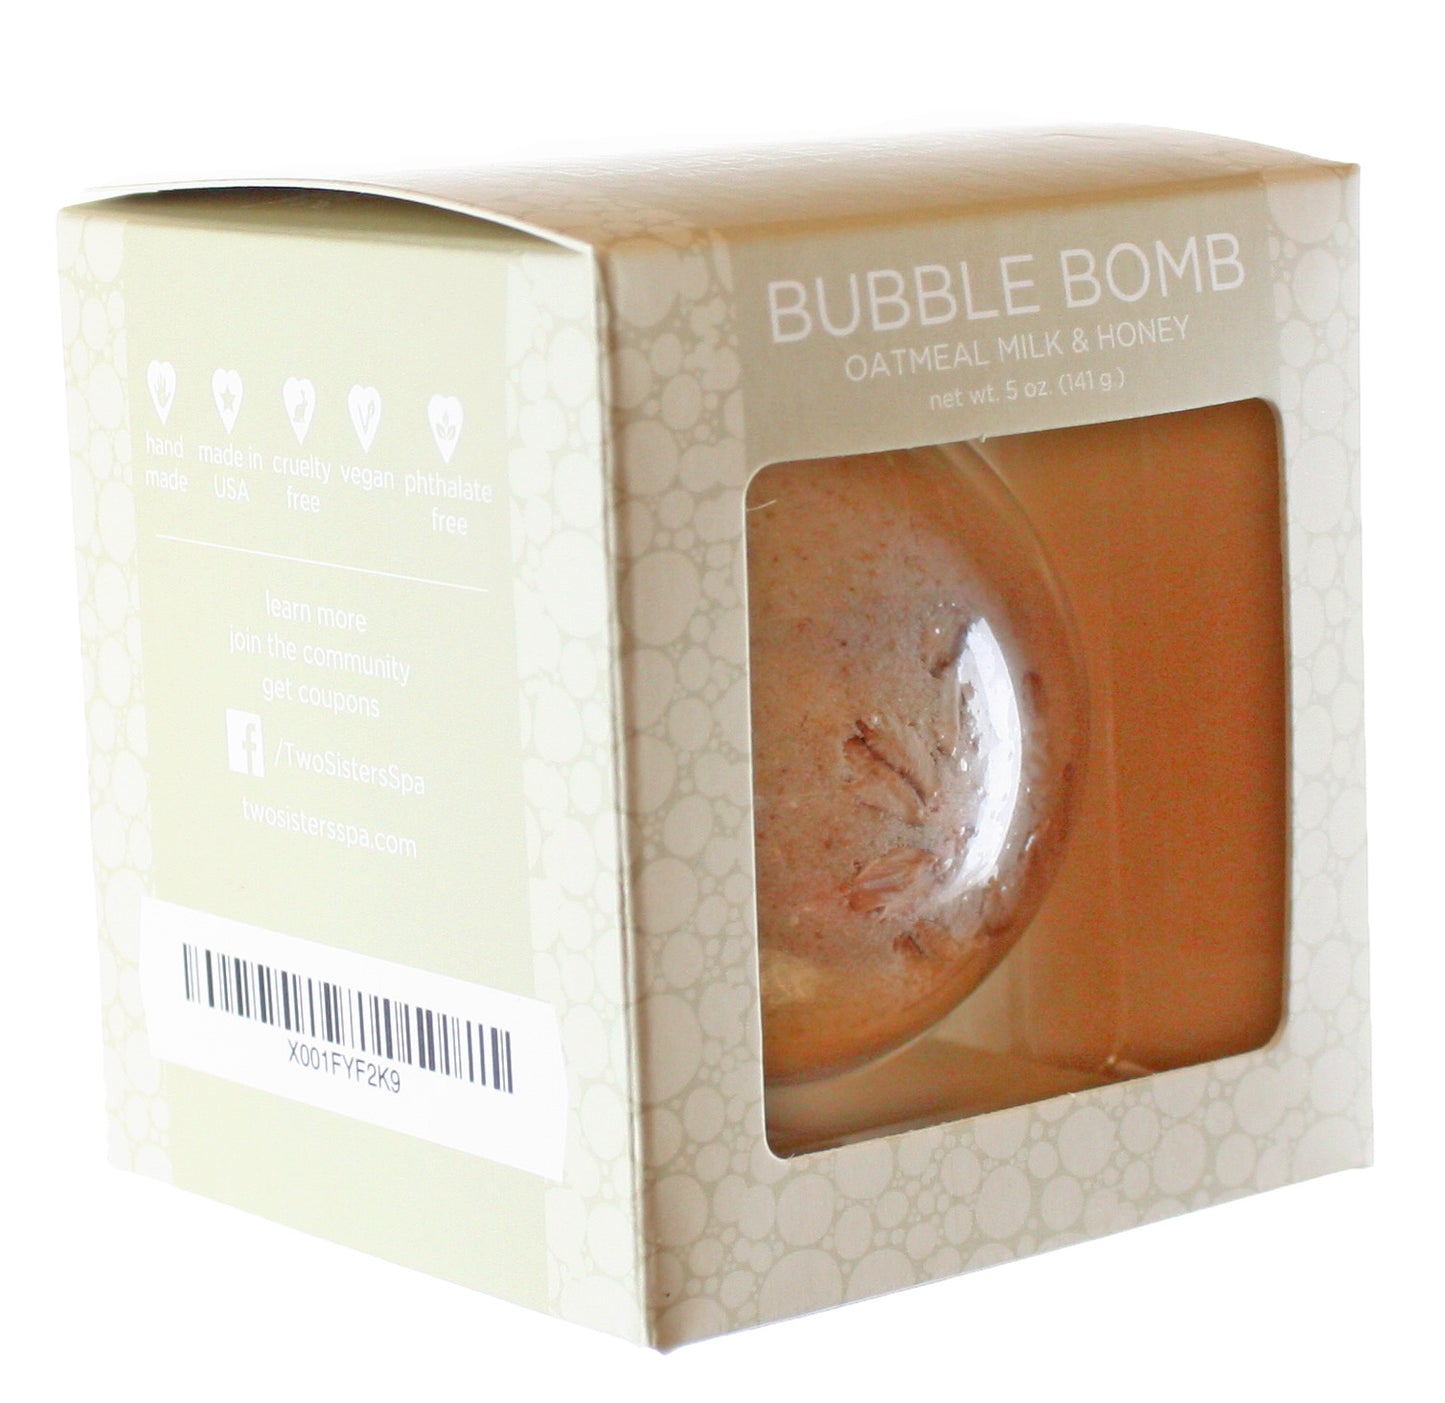 Oatmeal Milk & Honey Bubble Bath Bomb - Two Sisters Spa